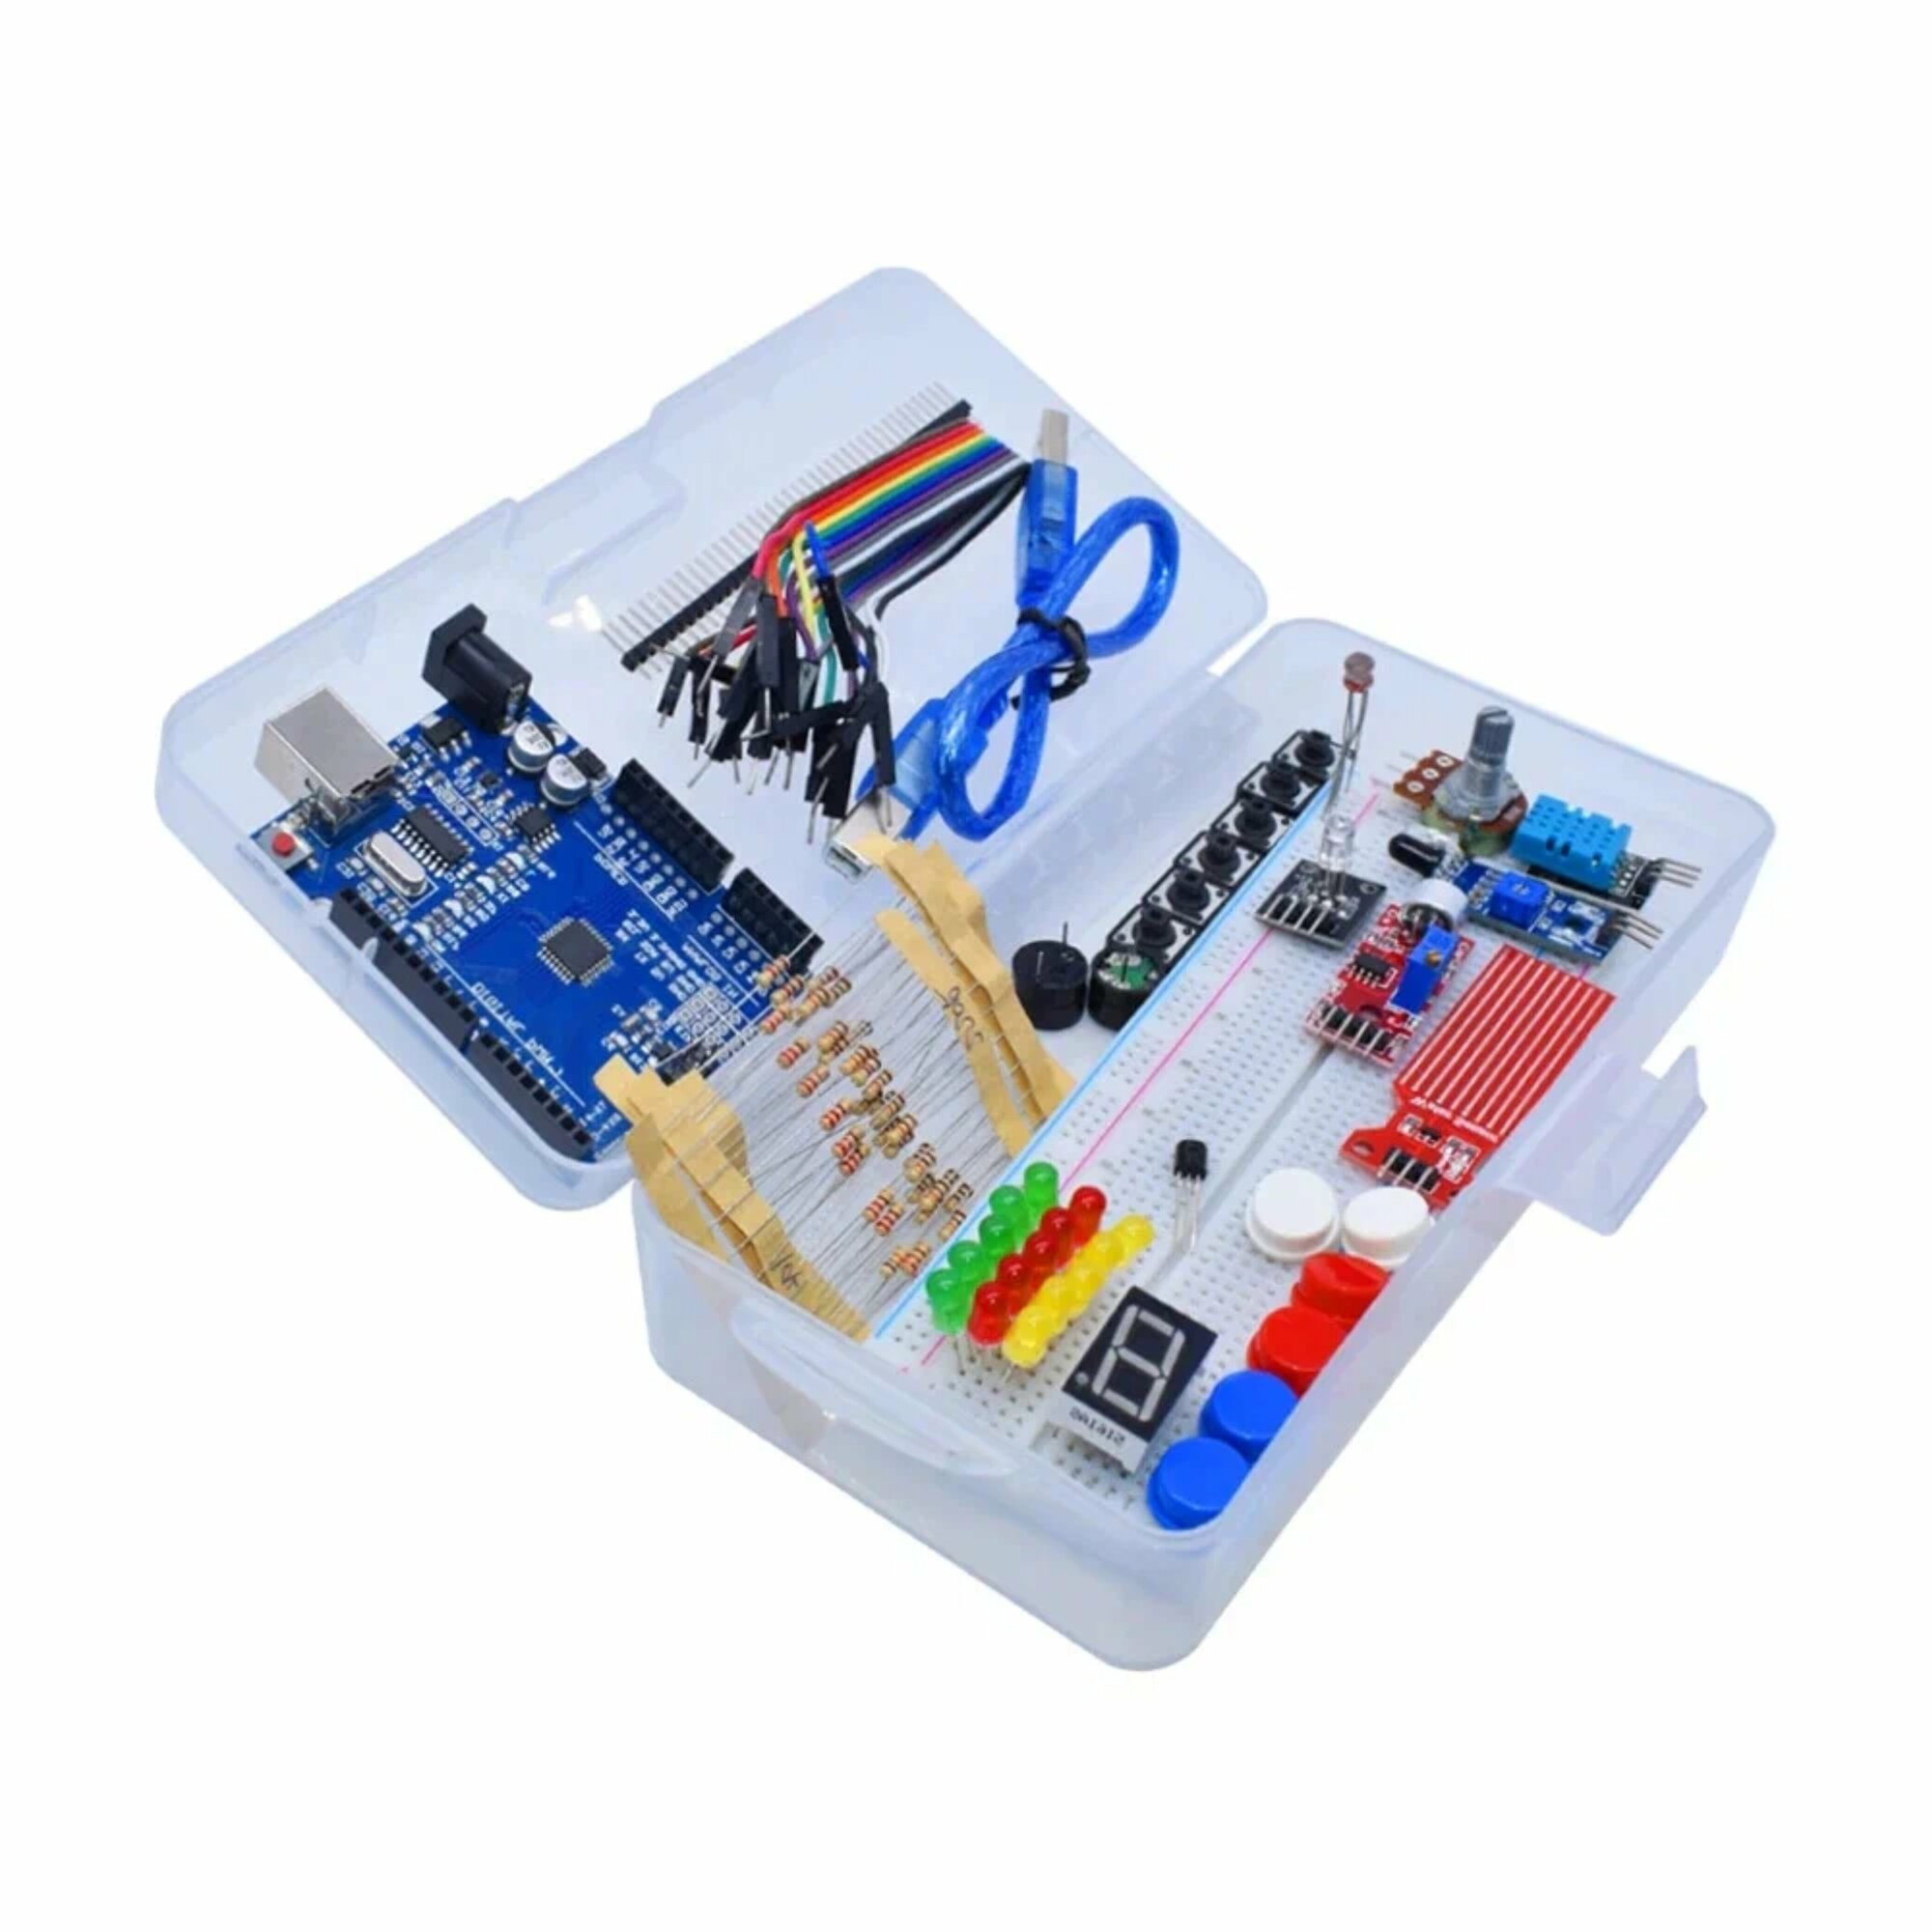 Набор Arduino Uno R3 начального уровня в комплекте контроллером в пластиковом кейсе